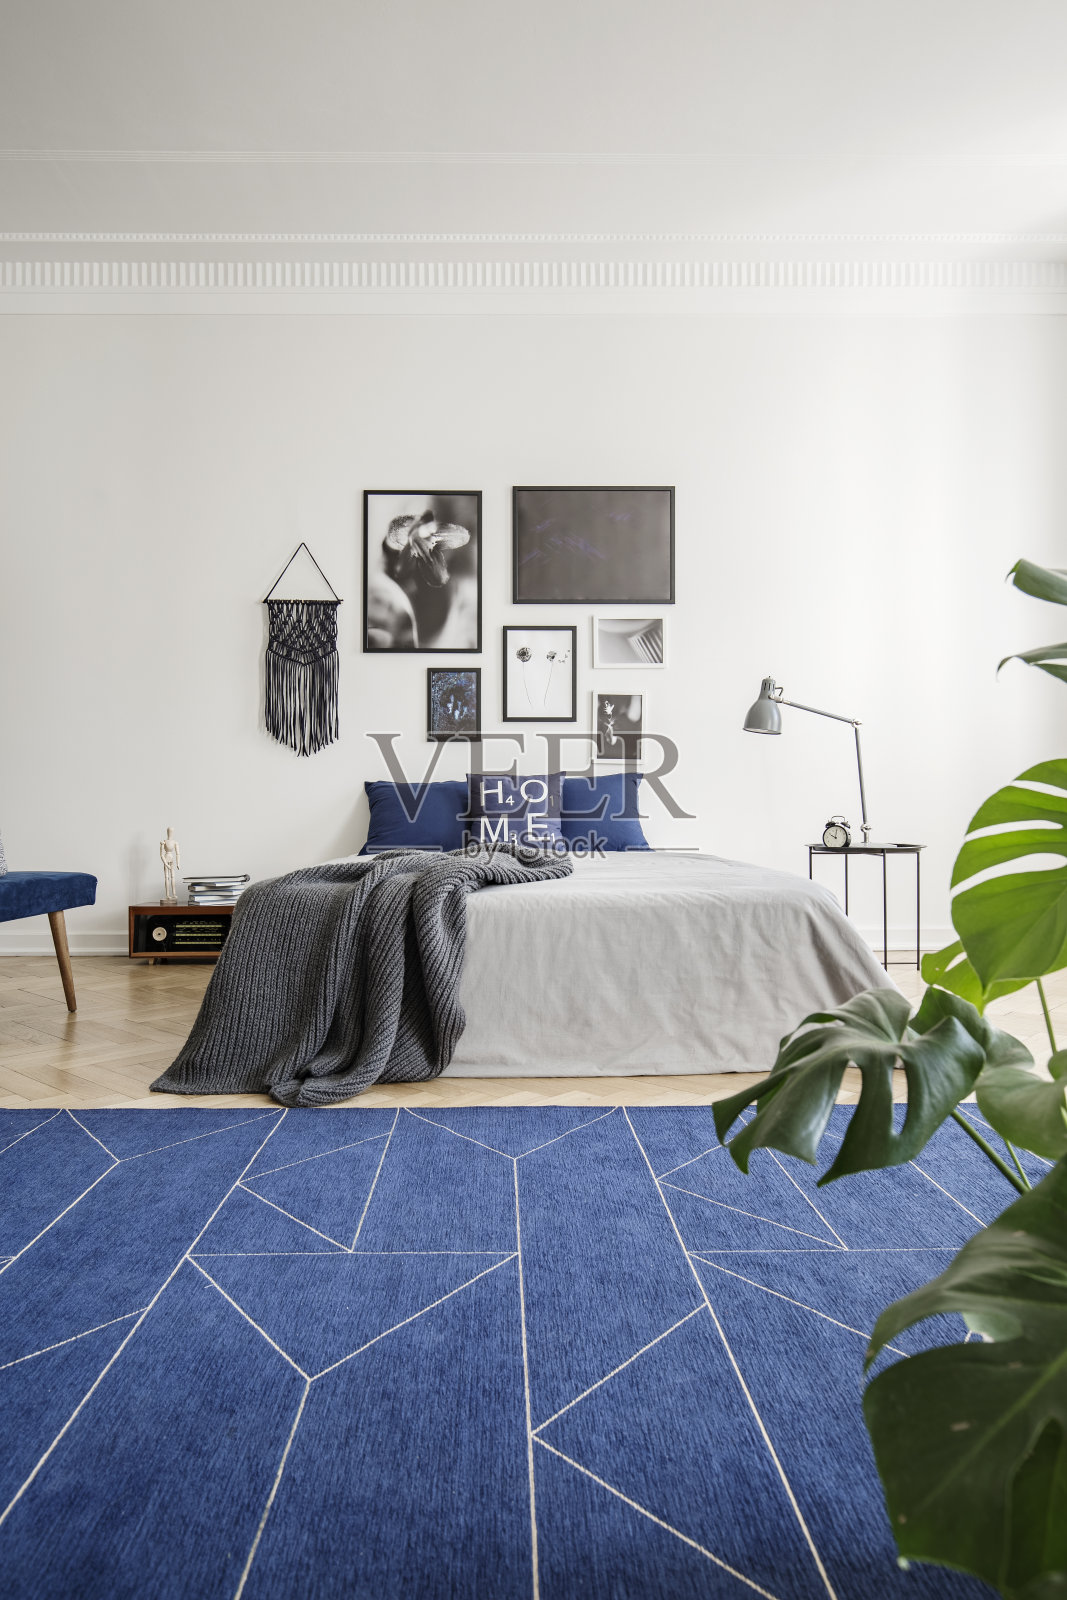 床上贴着海报，床上盖着毯子，卧室内部是白色的，有深蓝色的地毯和植物。真实的照片照片摄影图片